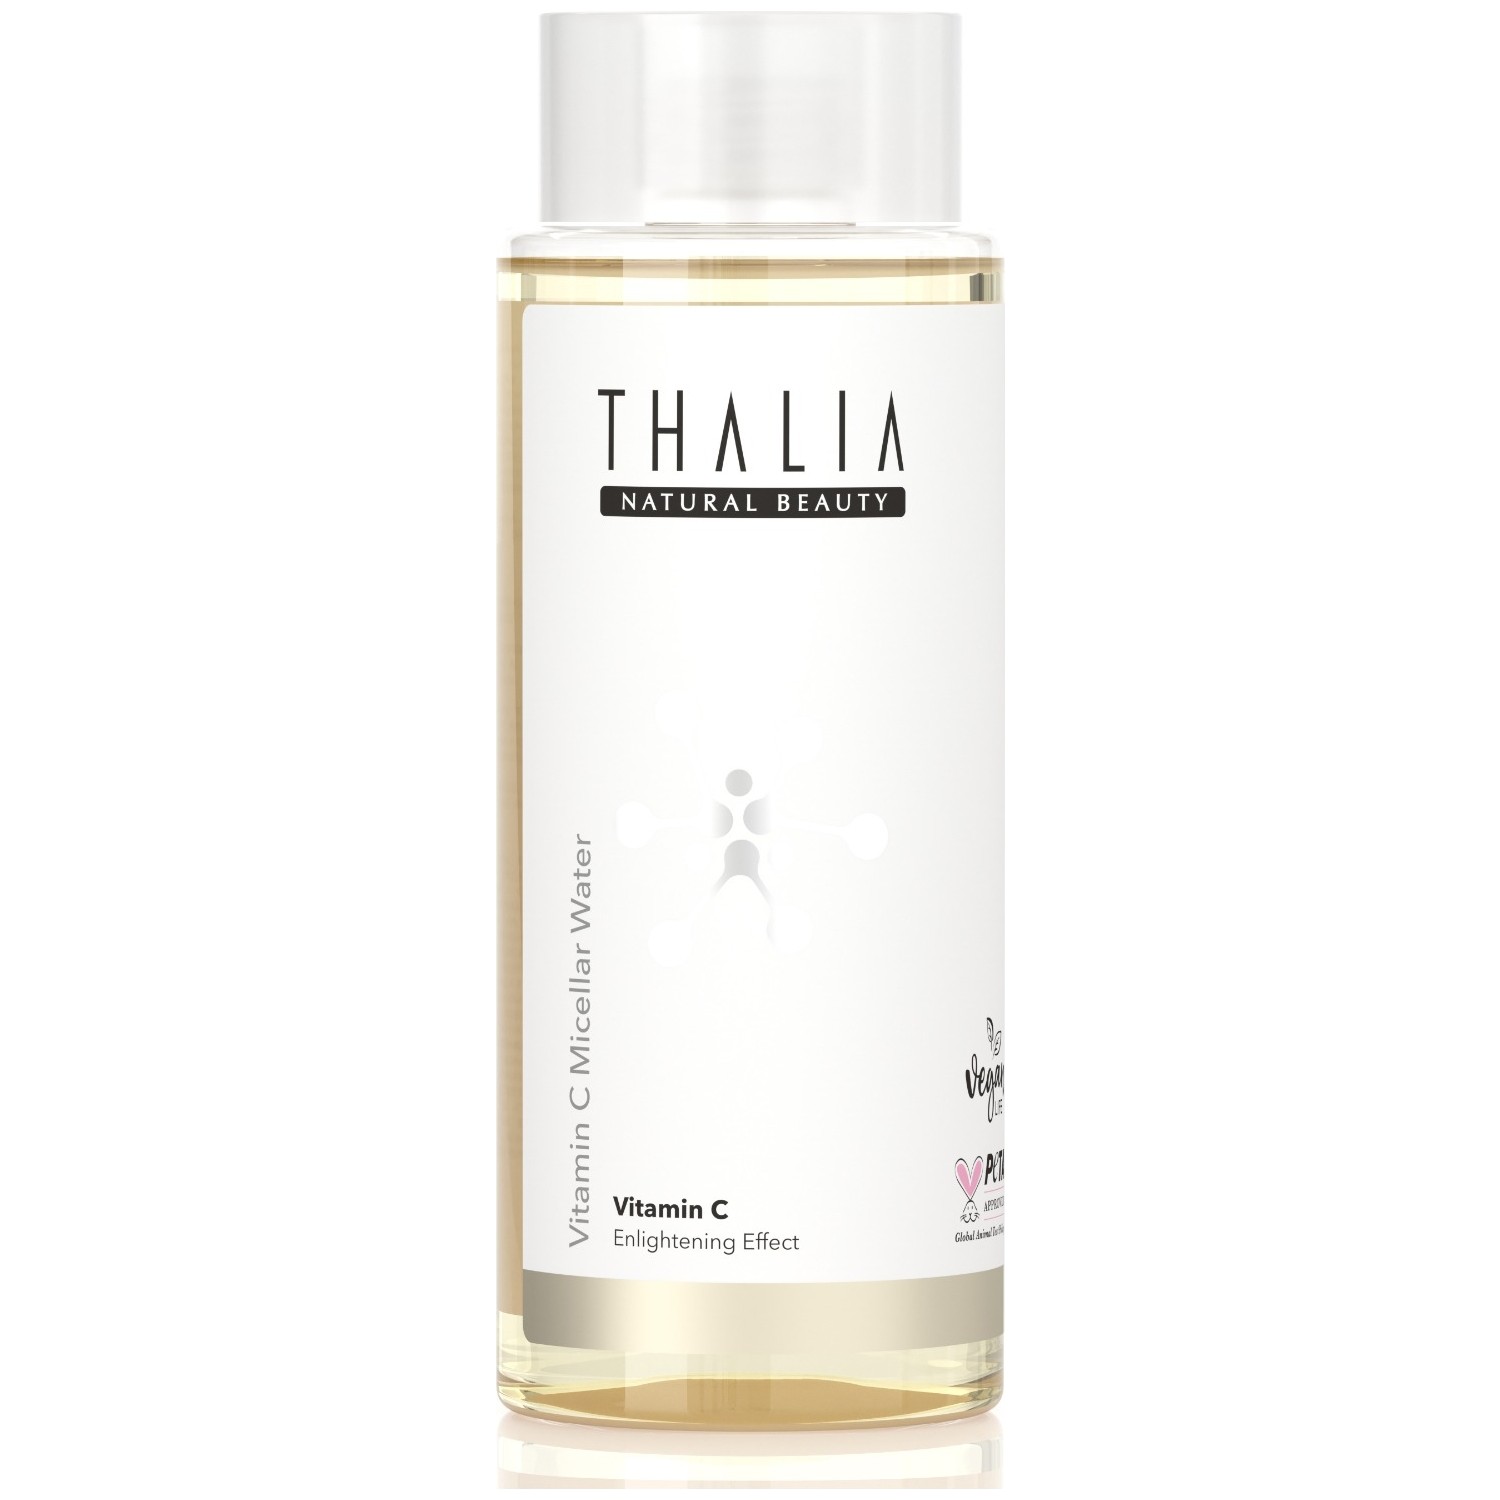 Мицеллярная очищающая вода Thalia Brightening для кожи, 300 мл средства для снятия макияжа pekah мицеллярная вода очищающая с экстрактом центеллы азиатской